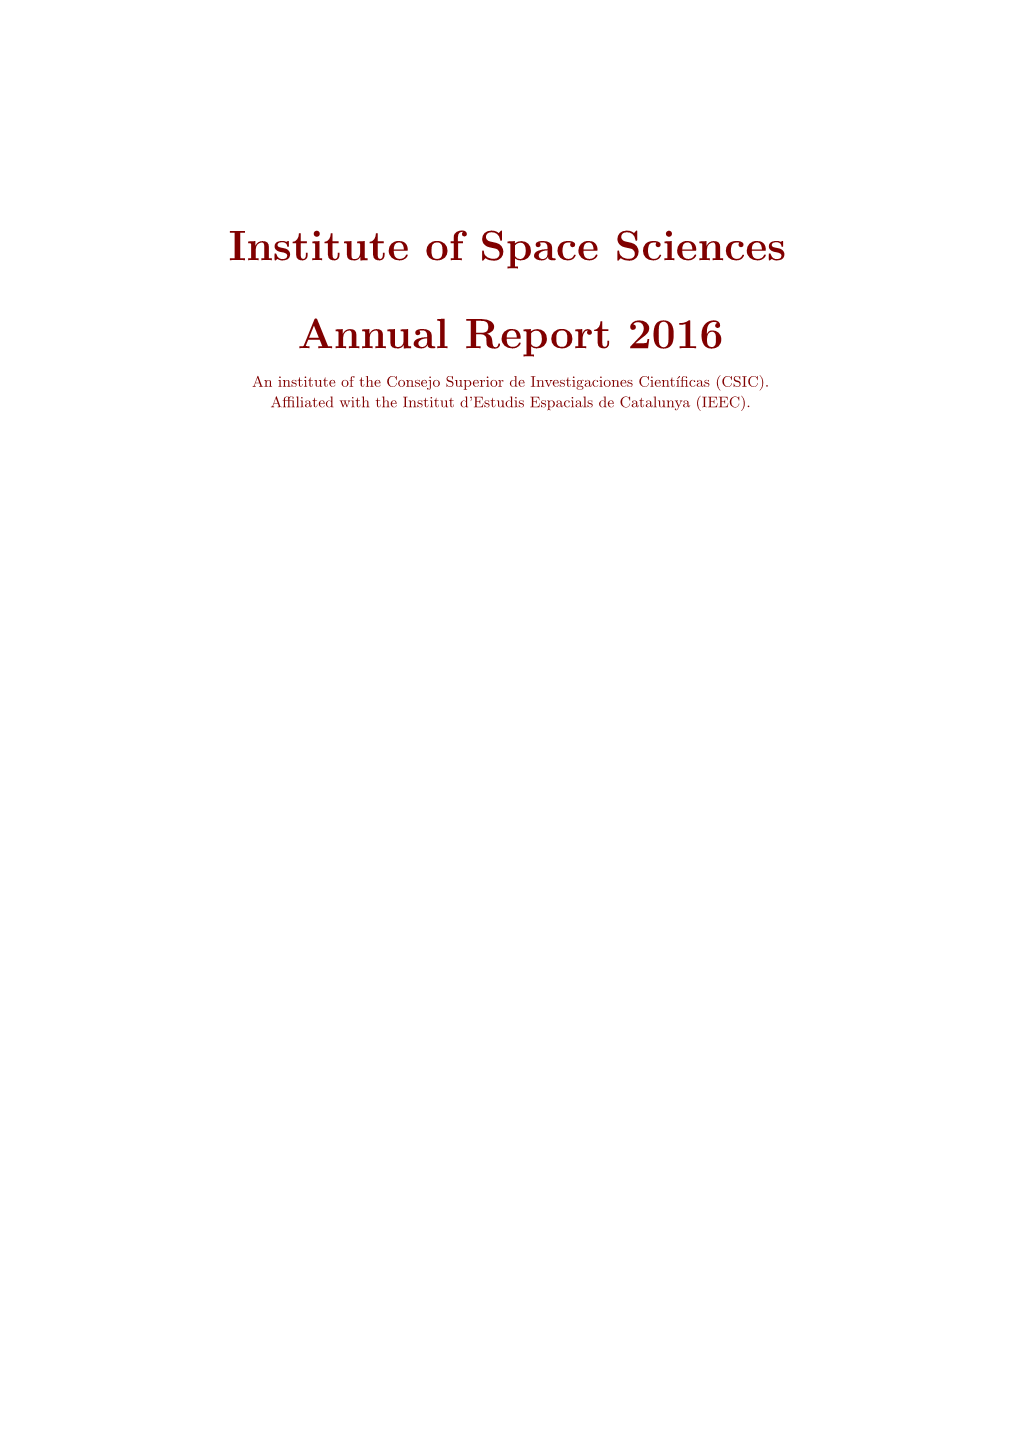 Institute of Space Sciences Annual Report 2016